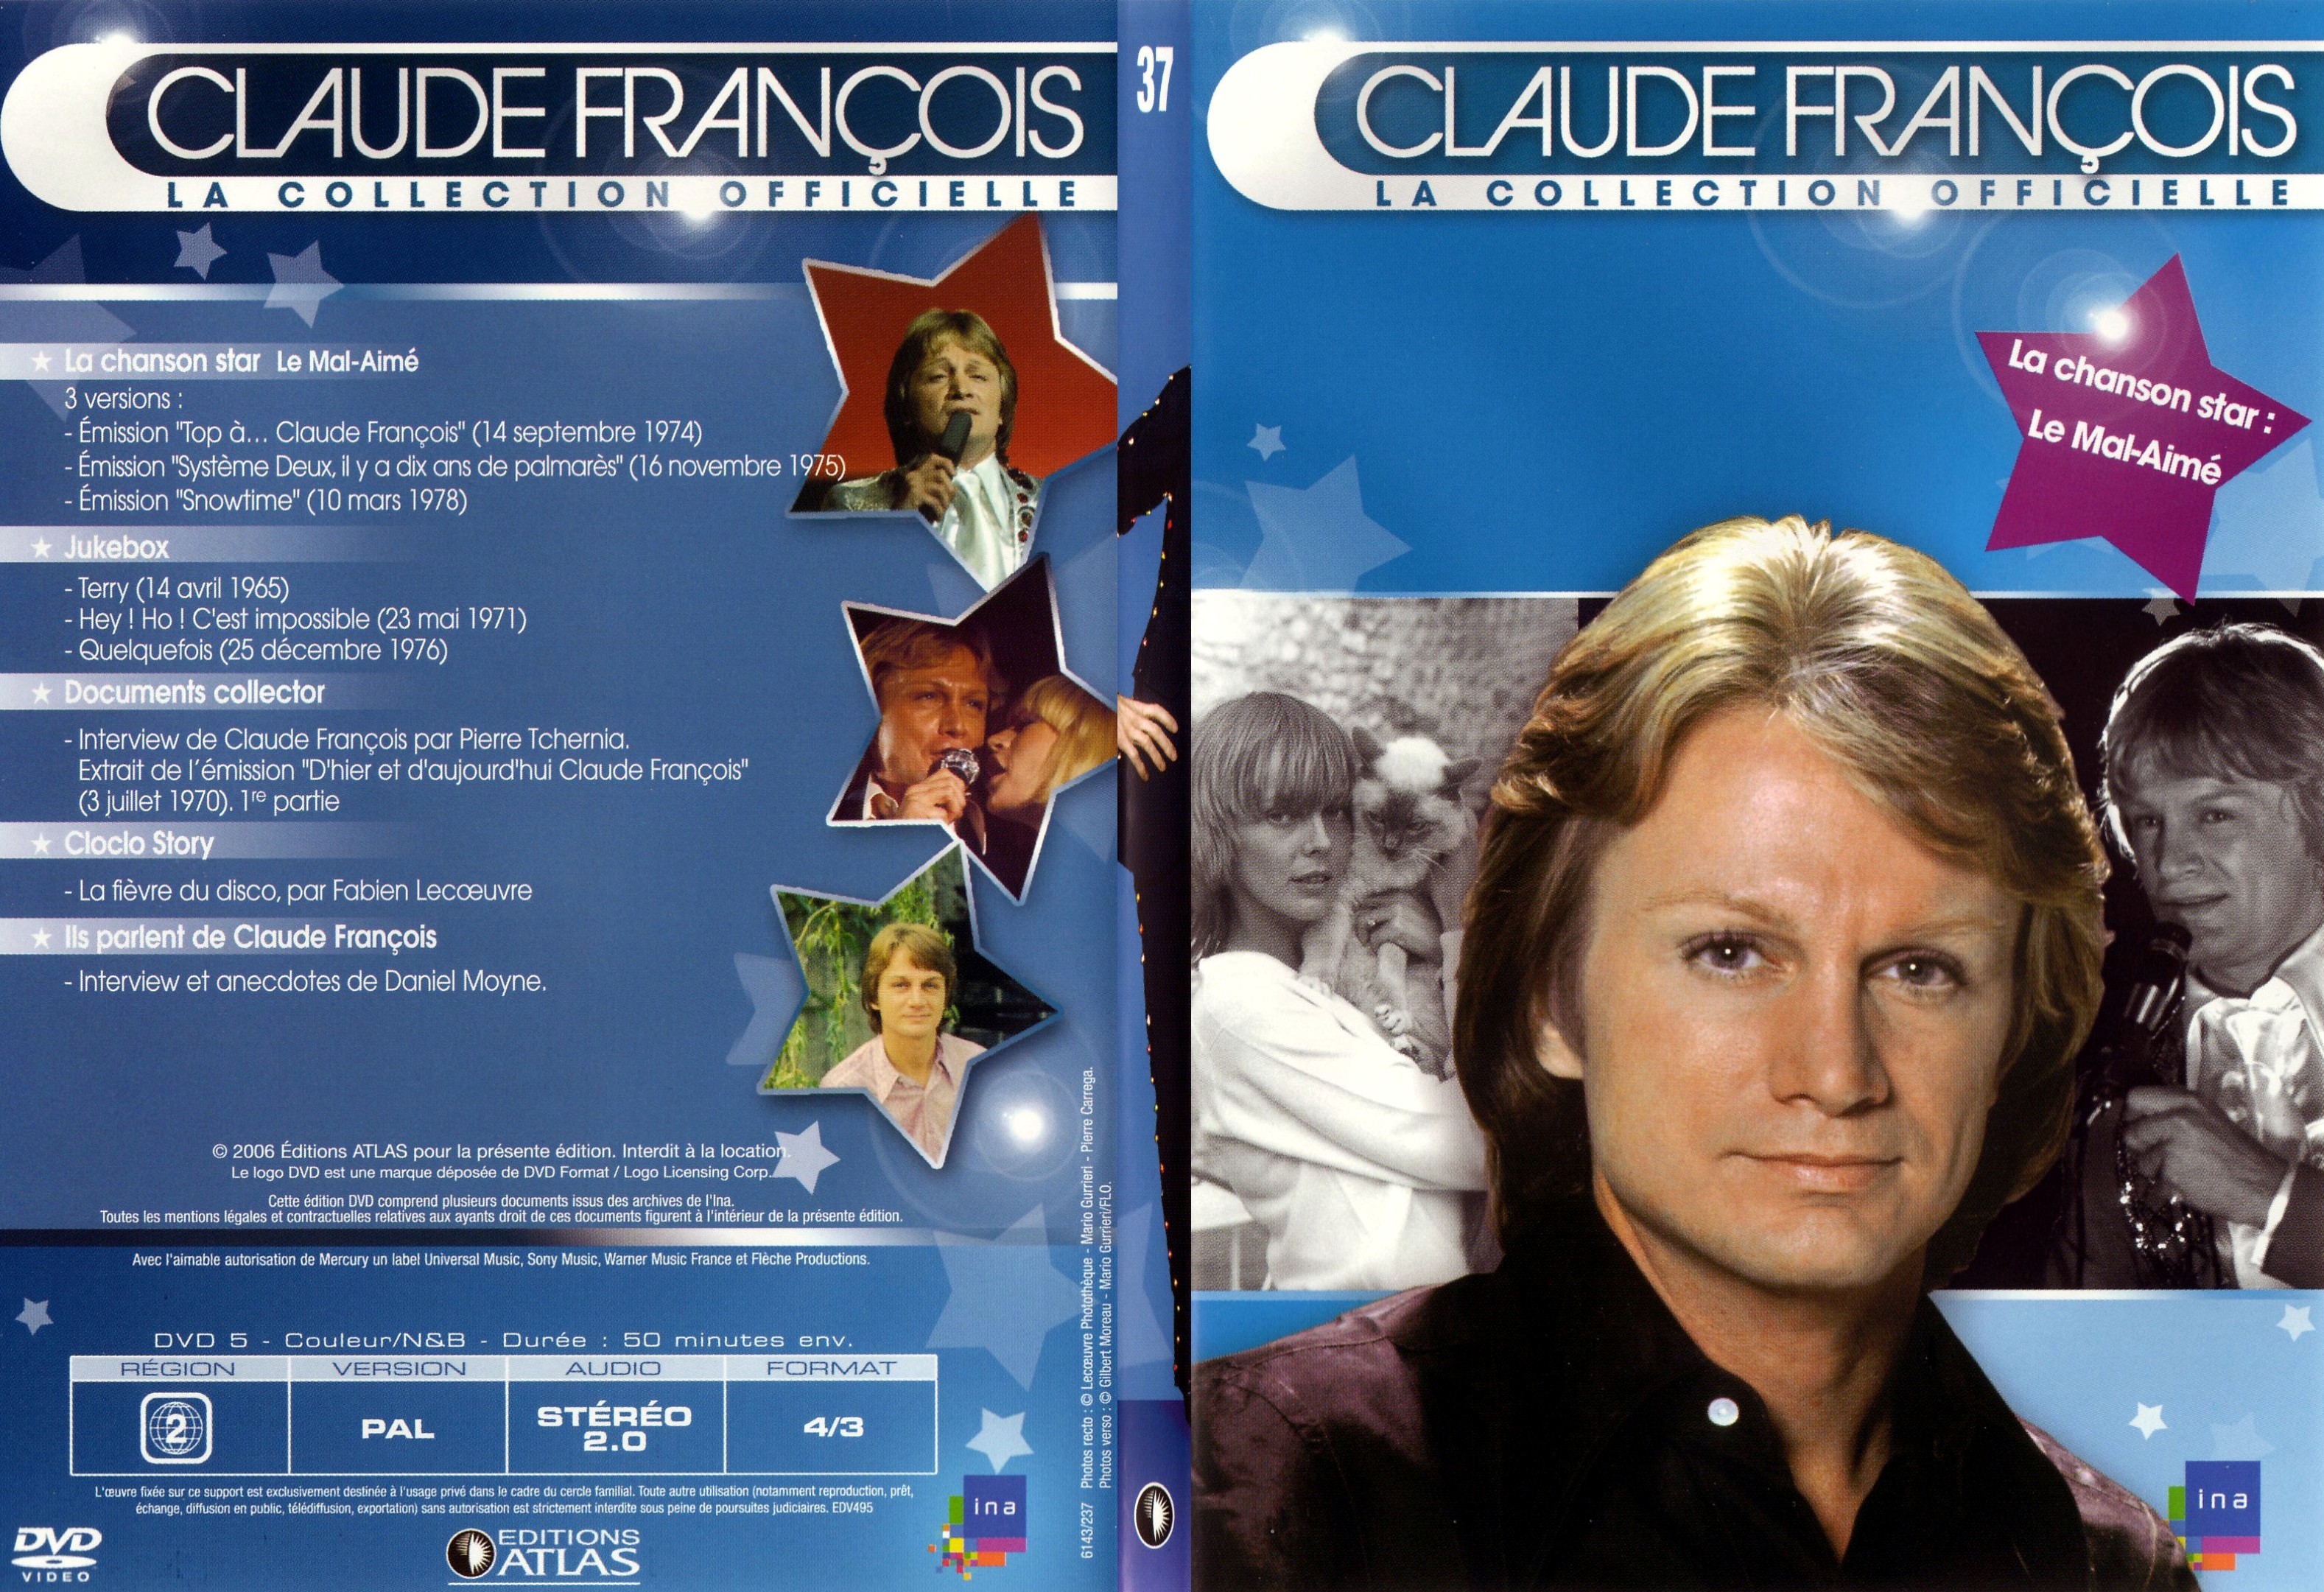 Jaquette DVD Claude francois le collection officielle vol 37 - SLIM